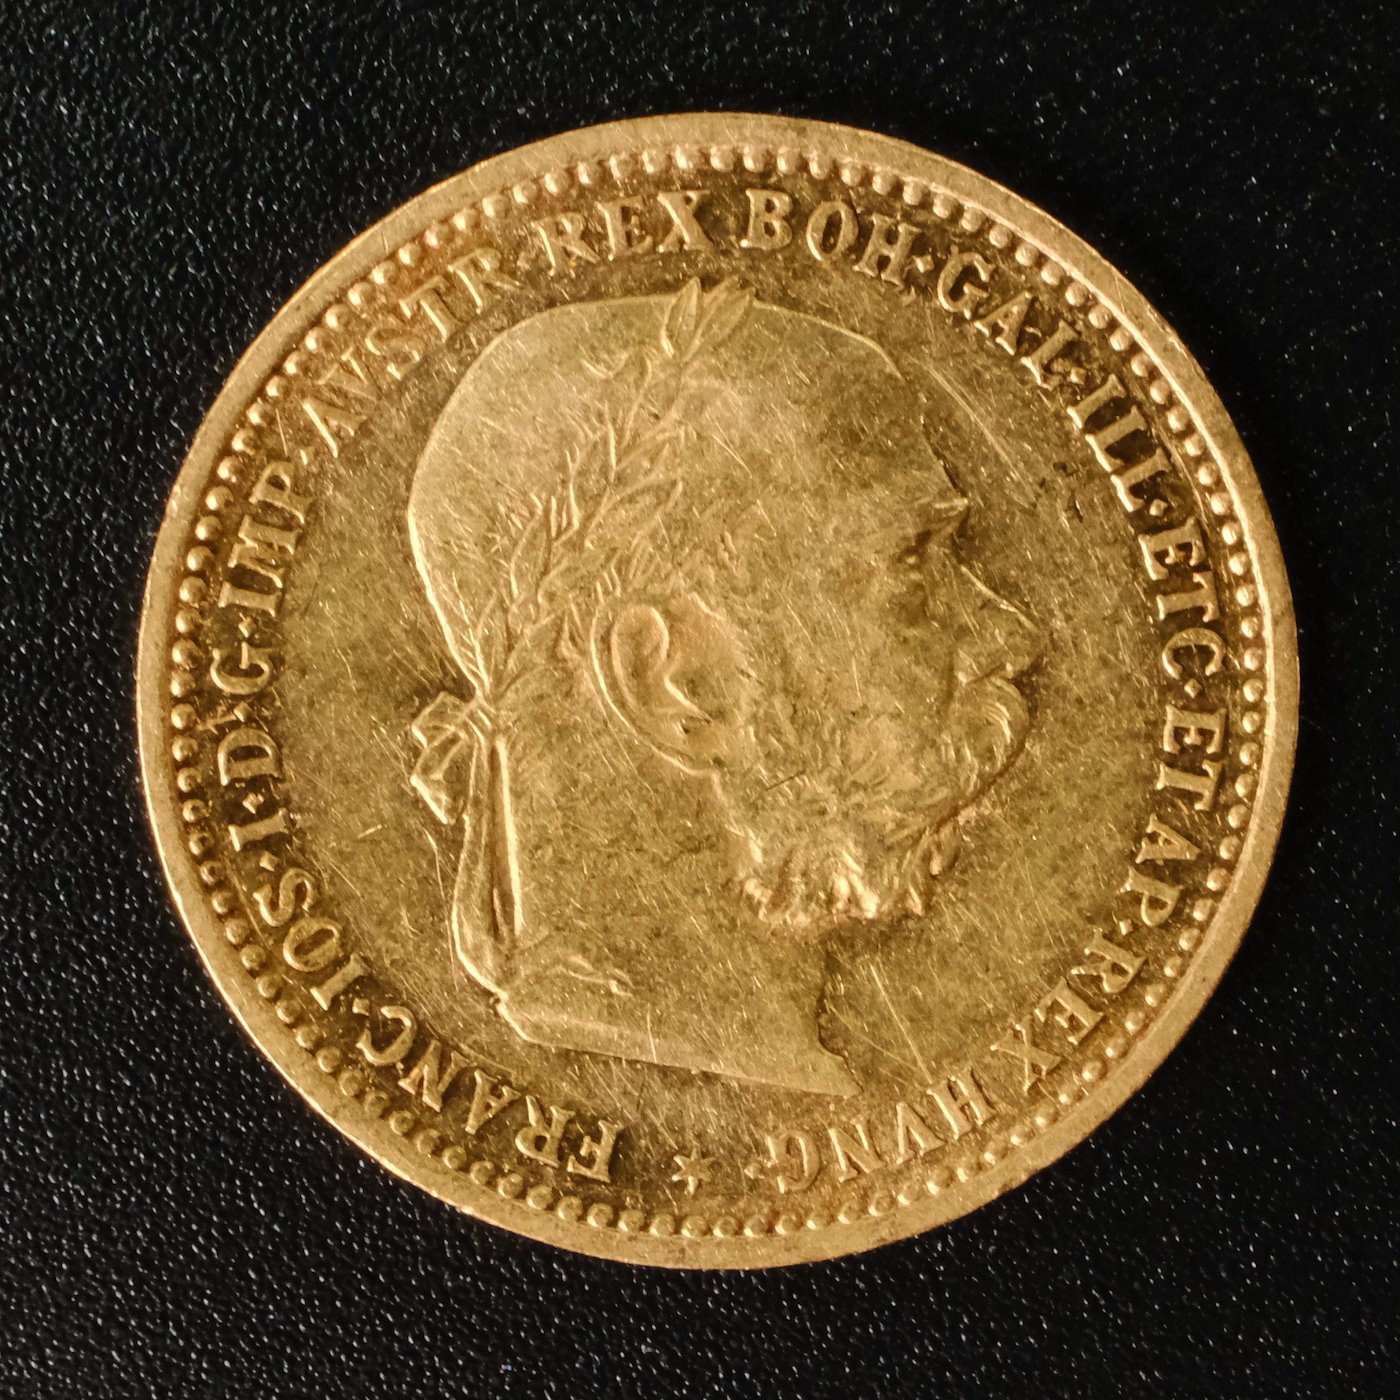 Mince - Rakousko Uhersko zlatá 10 Koruna 1905 rakouská, Zlato 900/1000, hrubá hmotnost mince 3,387g